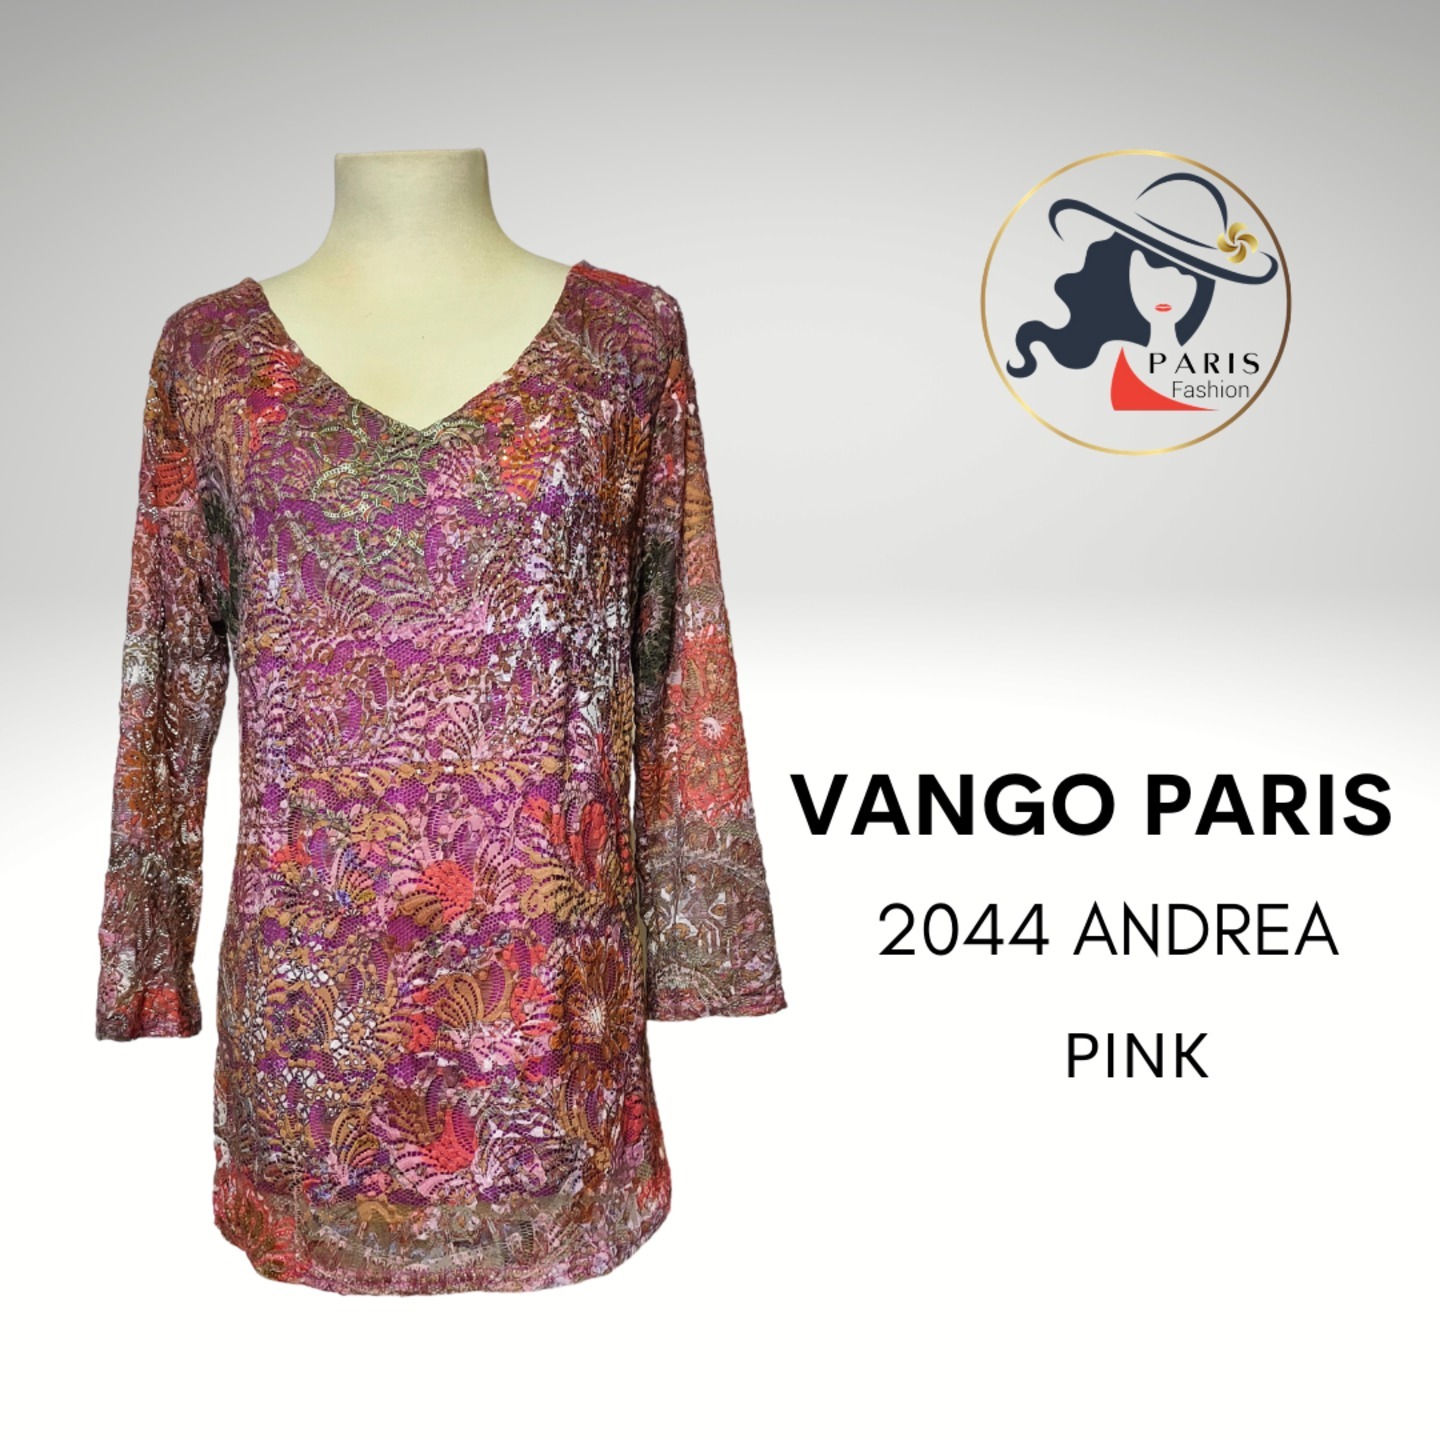 VANGO PARIS 2044 ANDREA LACE TOP WITH SEQUINS